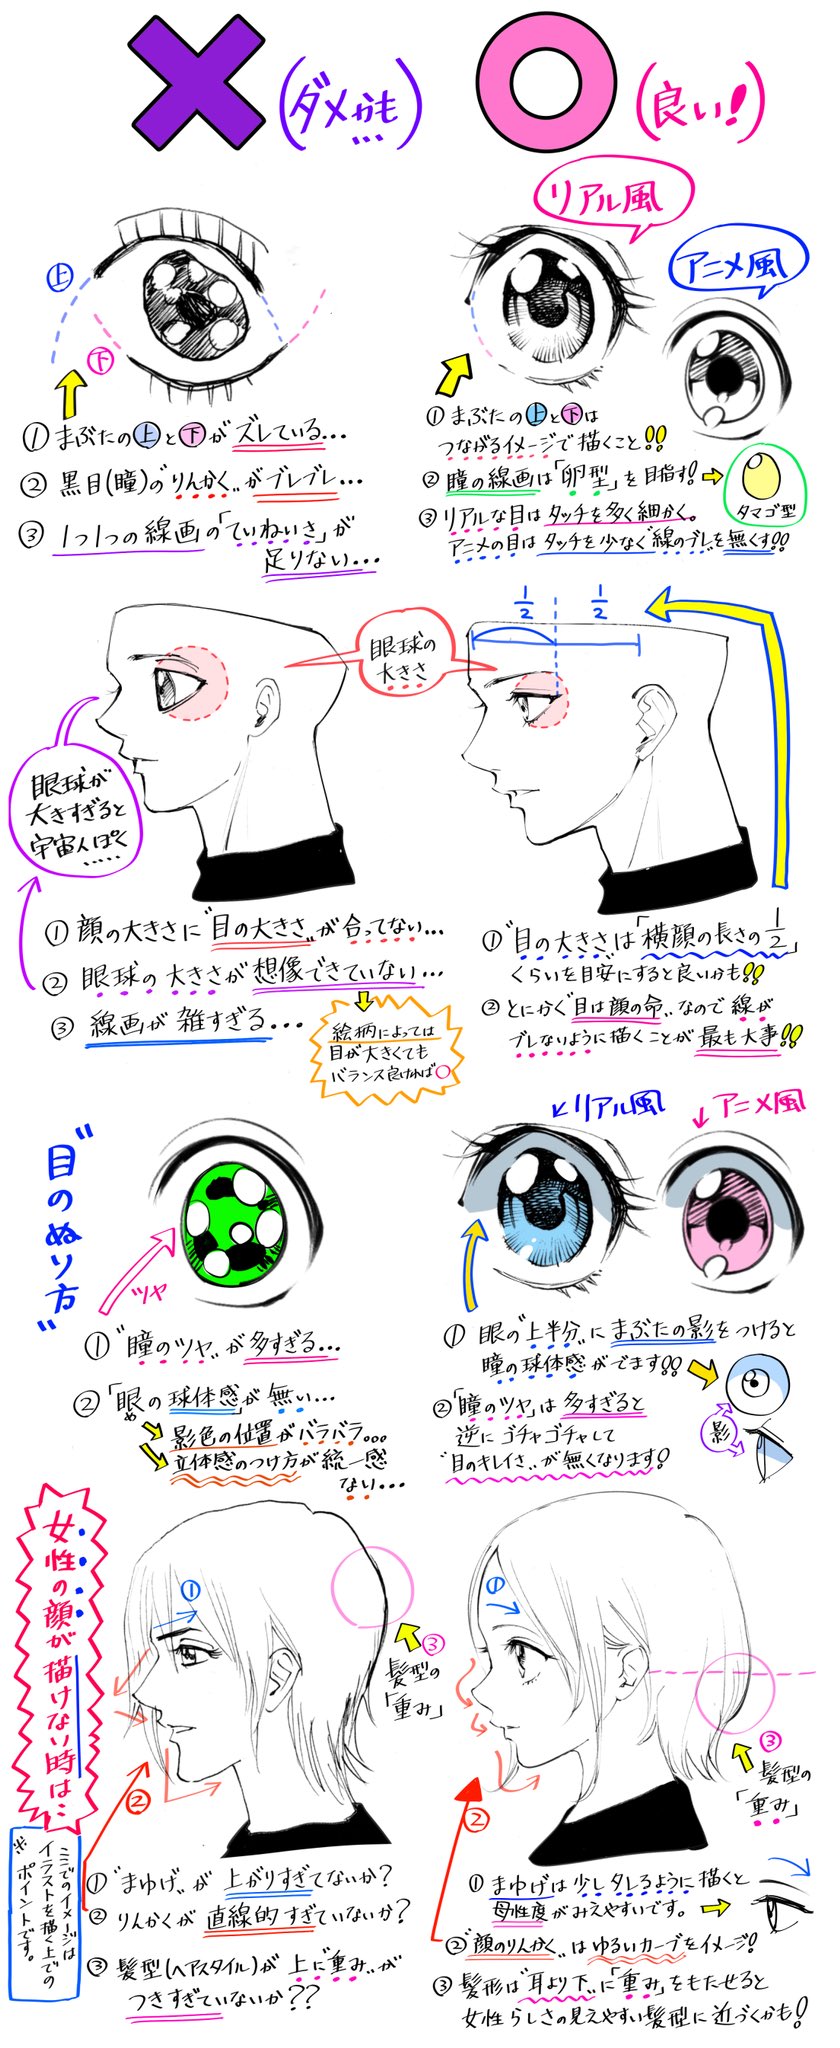 吉村拓也 イラスト講座 目の描き方 男と女 リアル眼とアニメ眼 を 描きたいときの ダメなこと と 良いこと T Co Lwoufwvhog Twitter